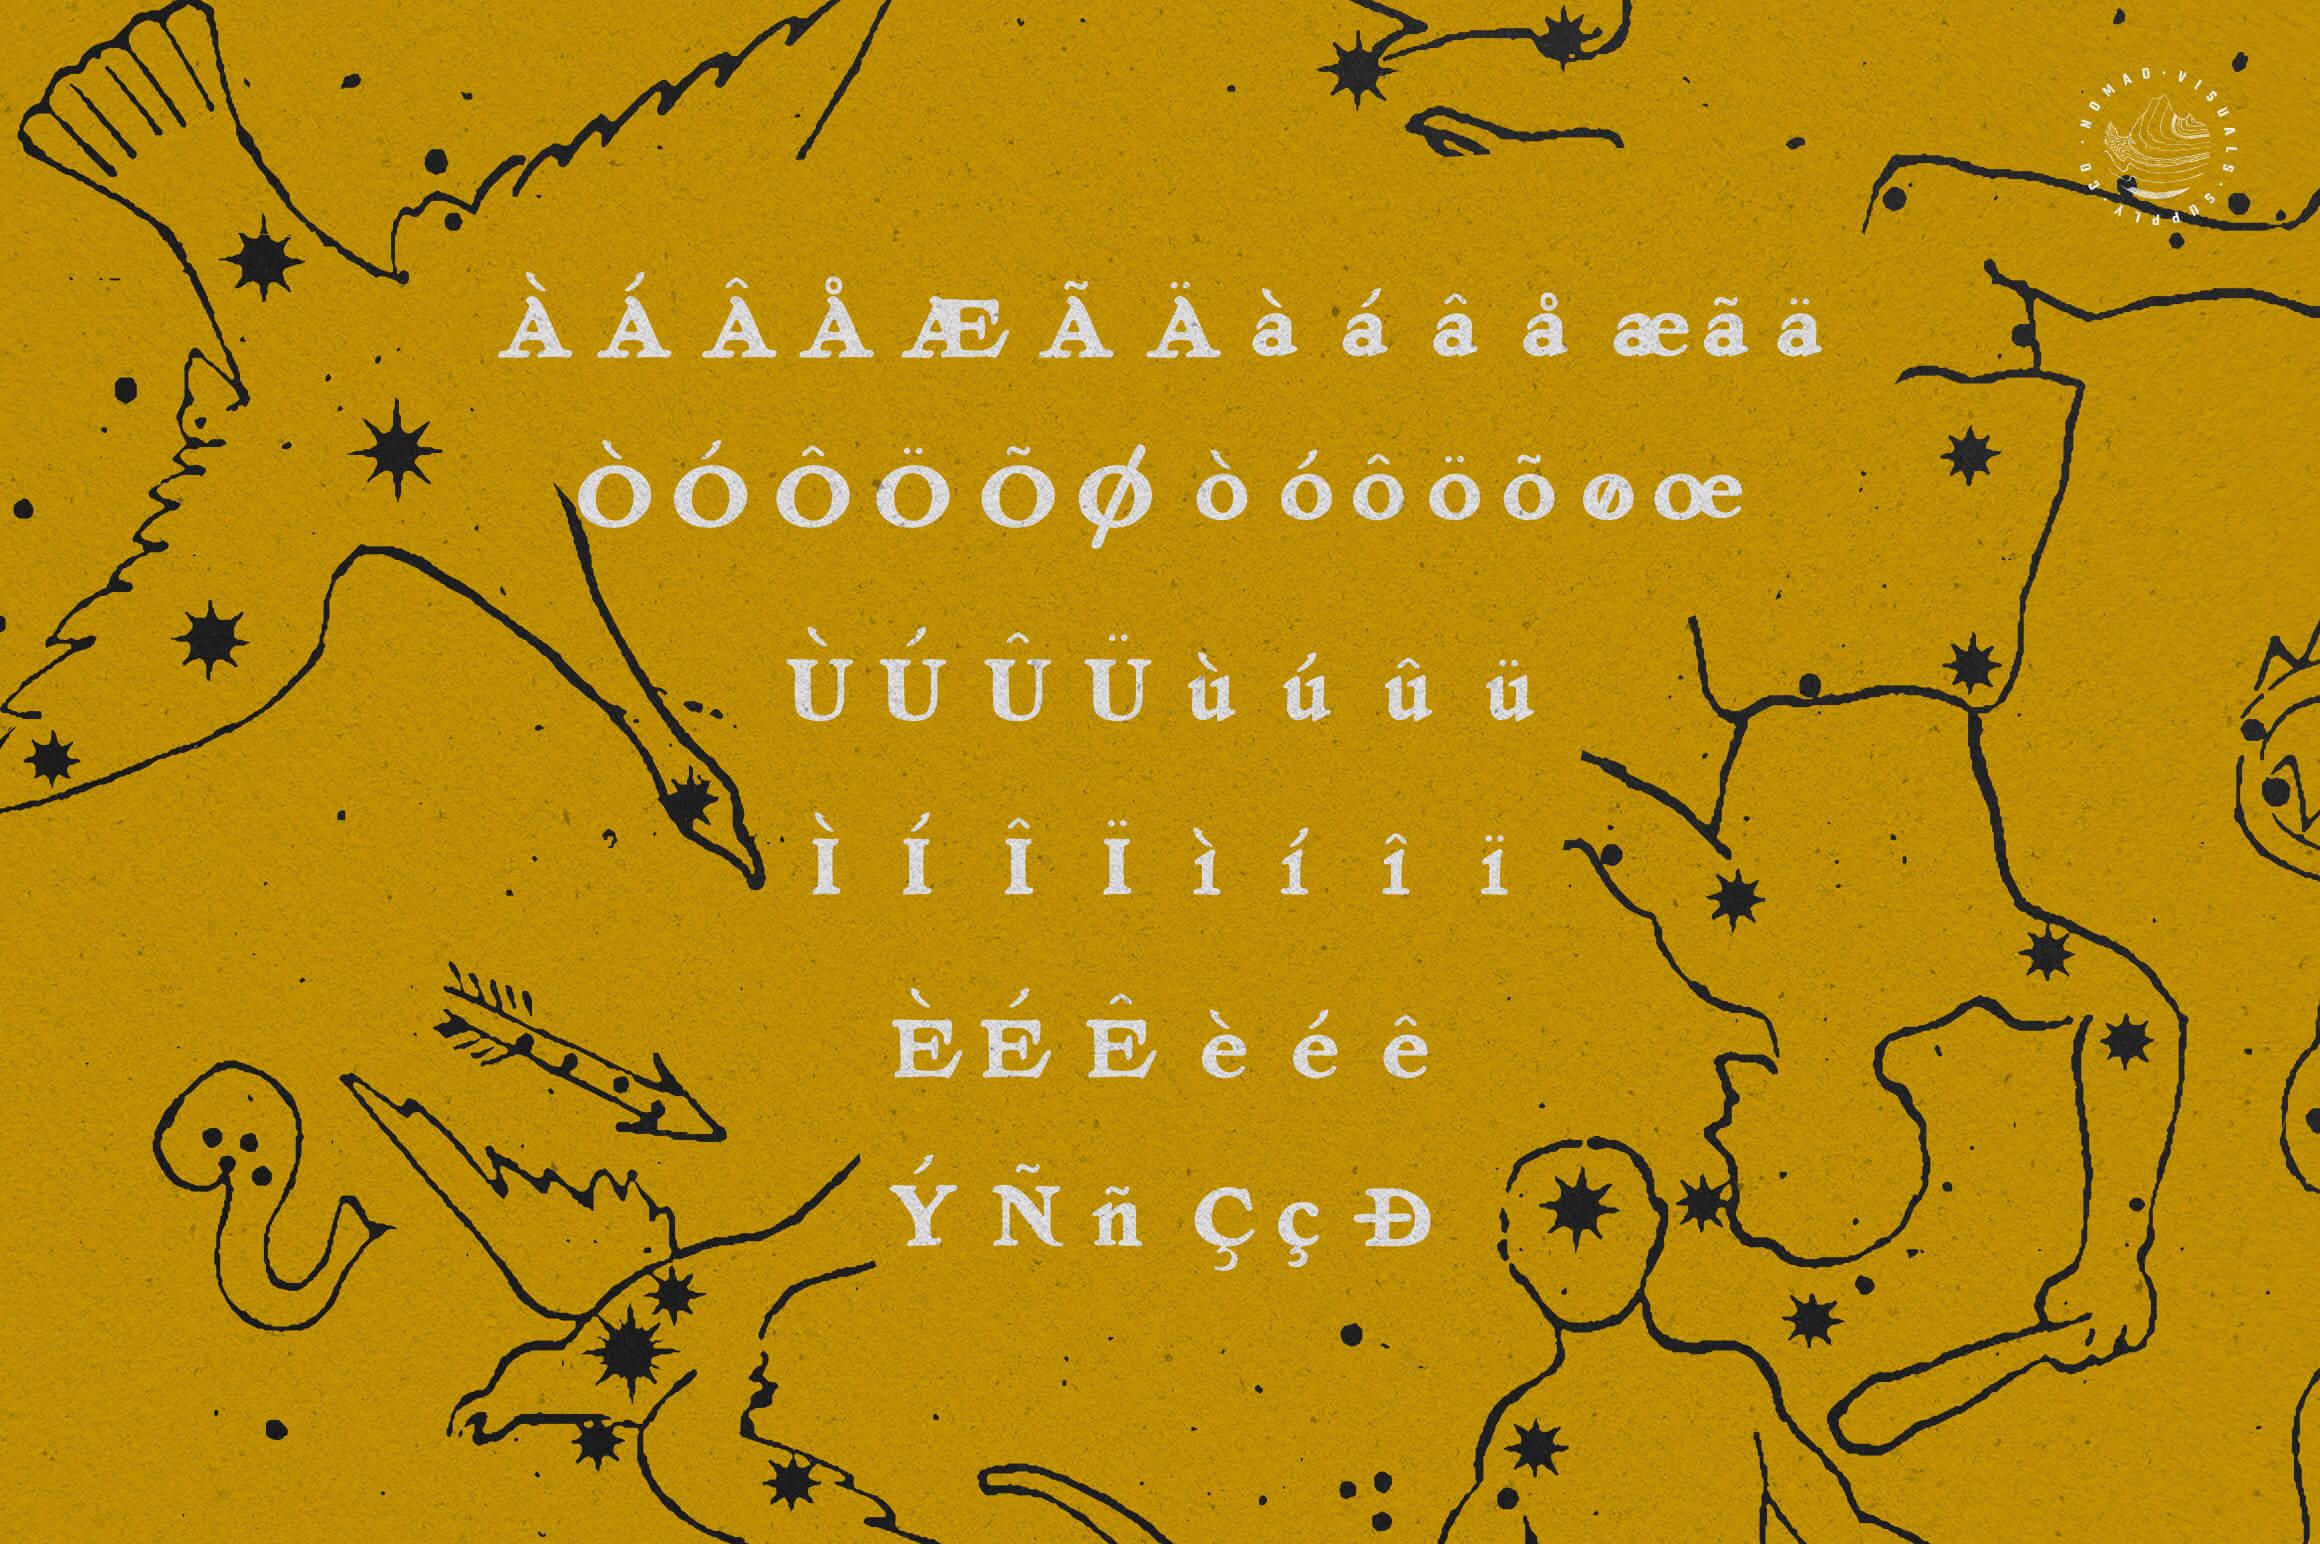 Venetia Display Serif Font